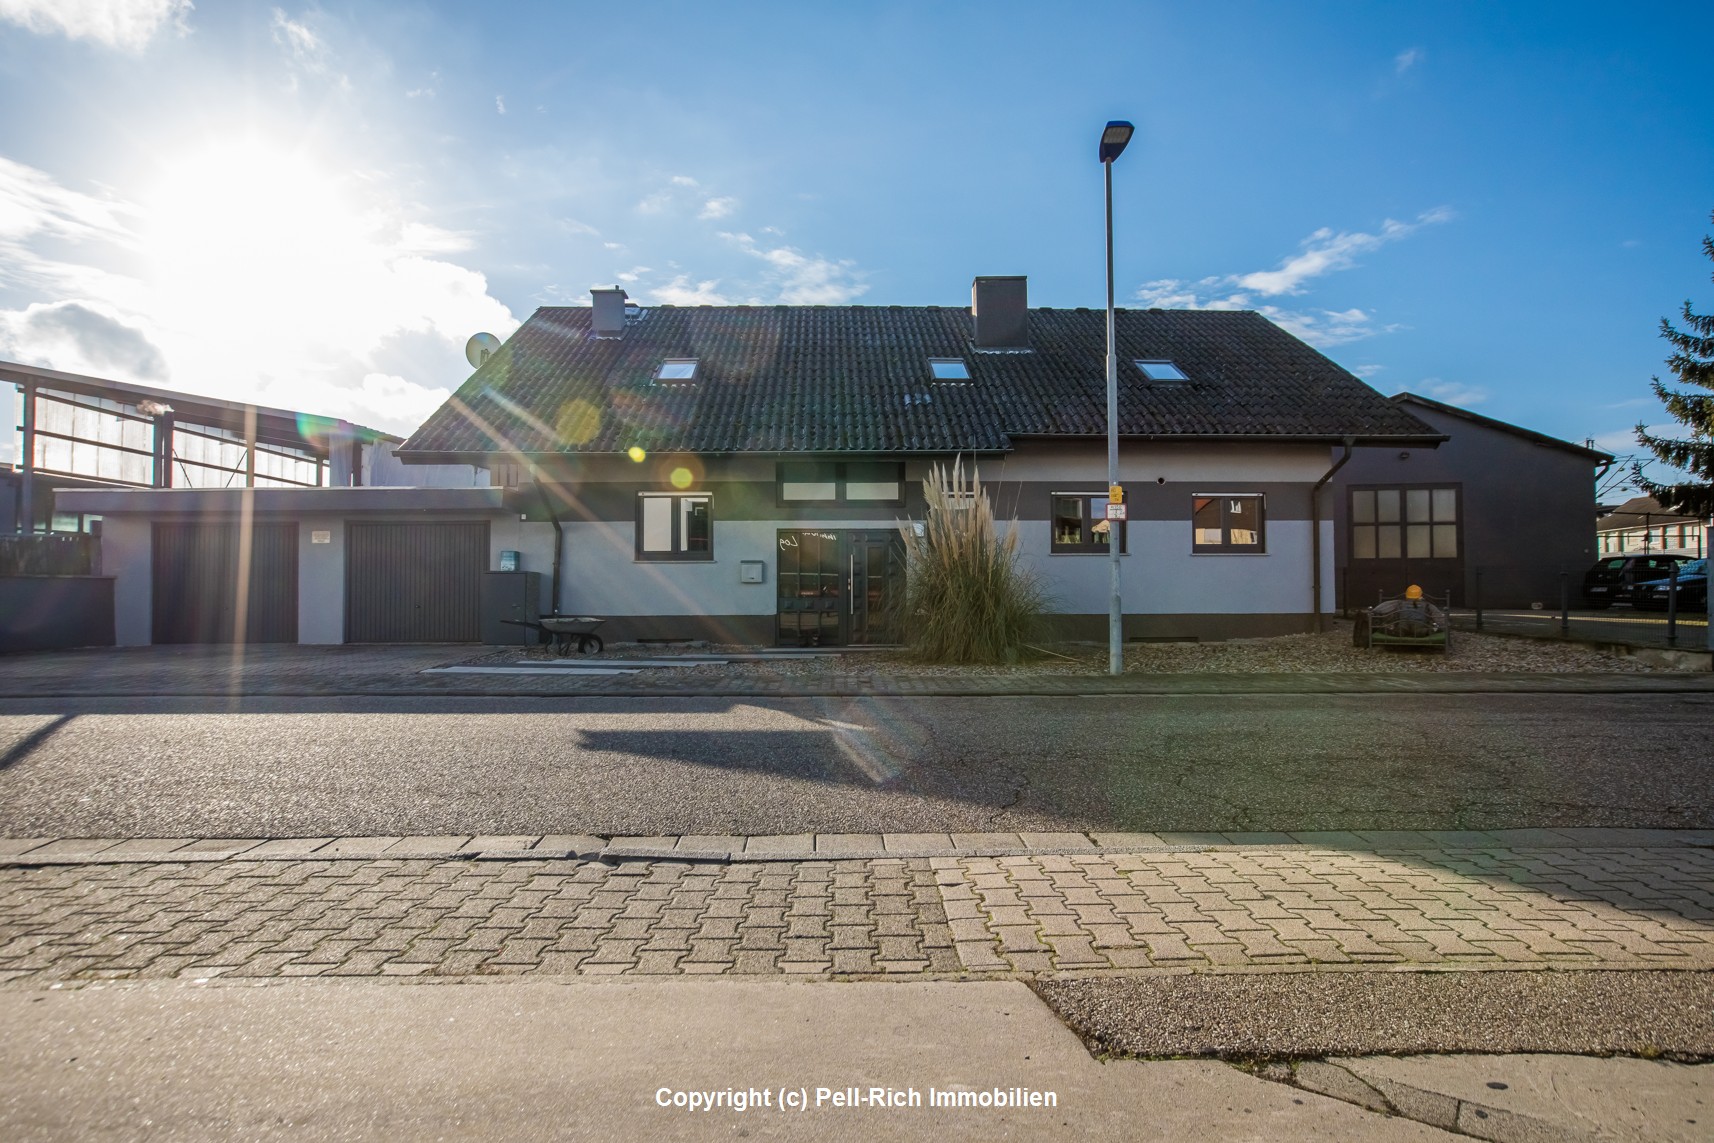 GROß IM GESCHÄFT: Mehrfamilienhaus mit zwei Hallen und großzügigem Grundstück in Durmersheim